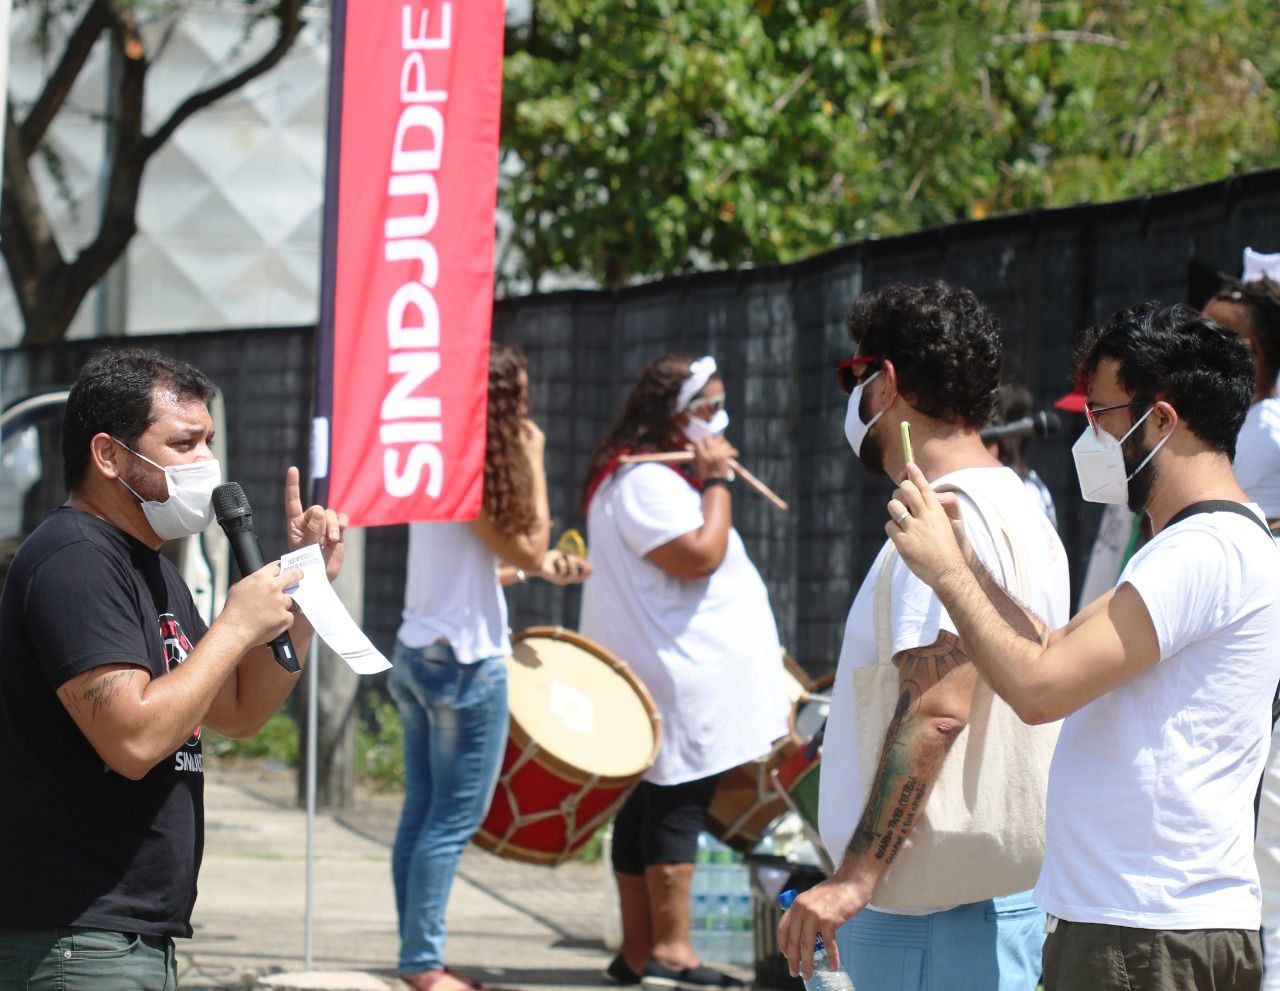 #PraCegoVer Fotografia em frente ao Fórum Rodolfo Aureliano, no Recife, reúne parte da diretoria do SINDJUD-PE com grupo de maracatu ao fundo durante mobilização para a Assembleia Geral do dia 31/01.